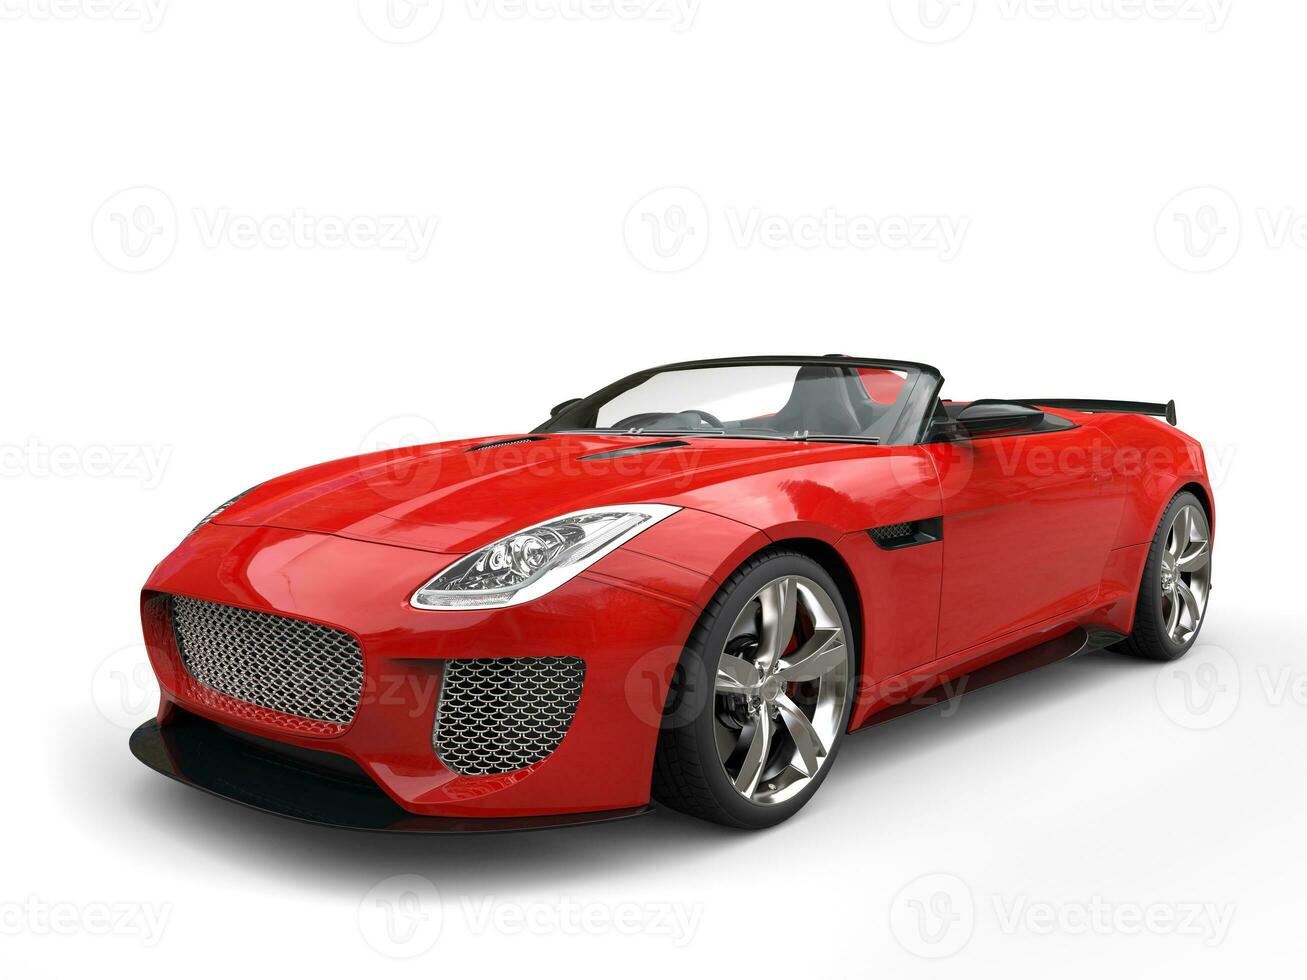 moderno rápido furioso rojo convertible súper Deportes coche foto